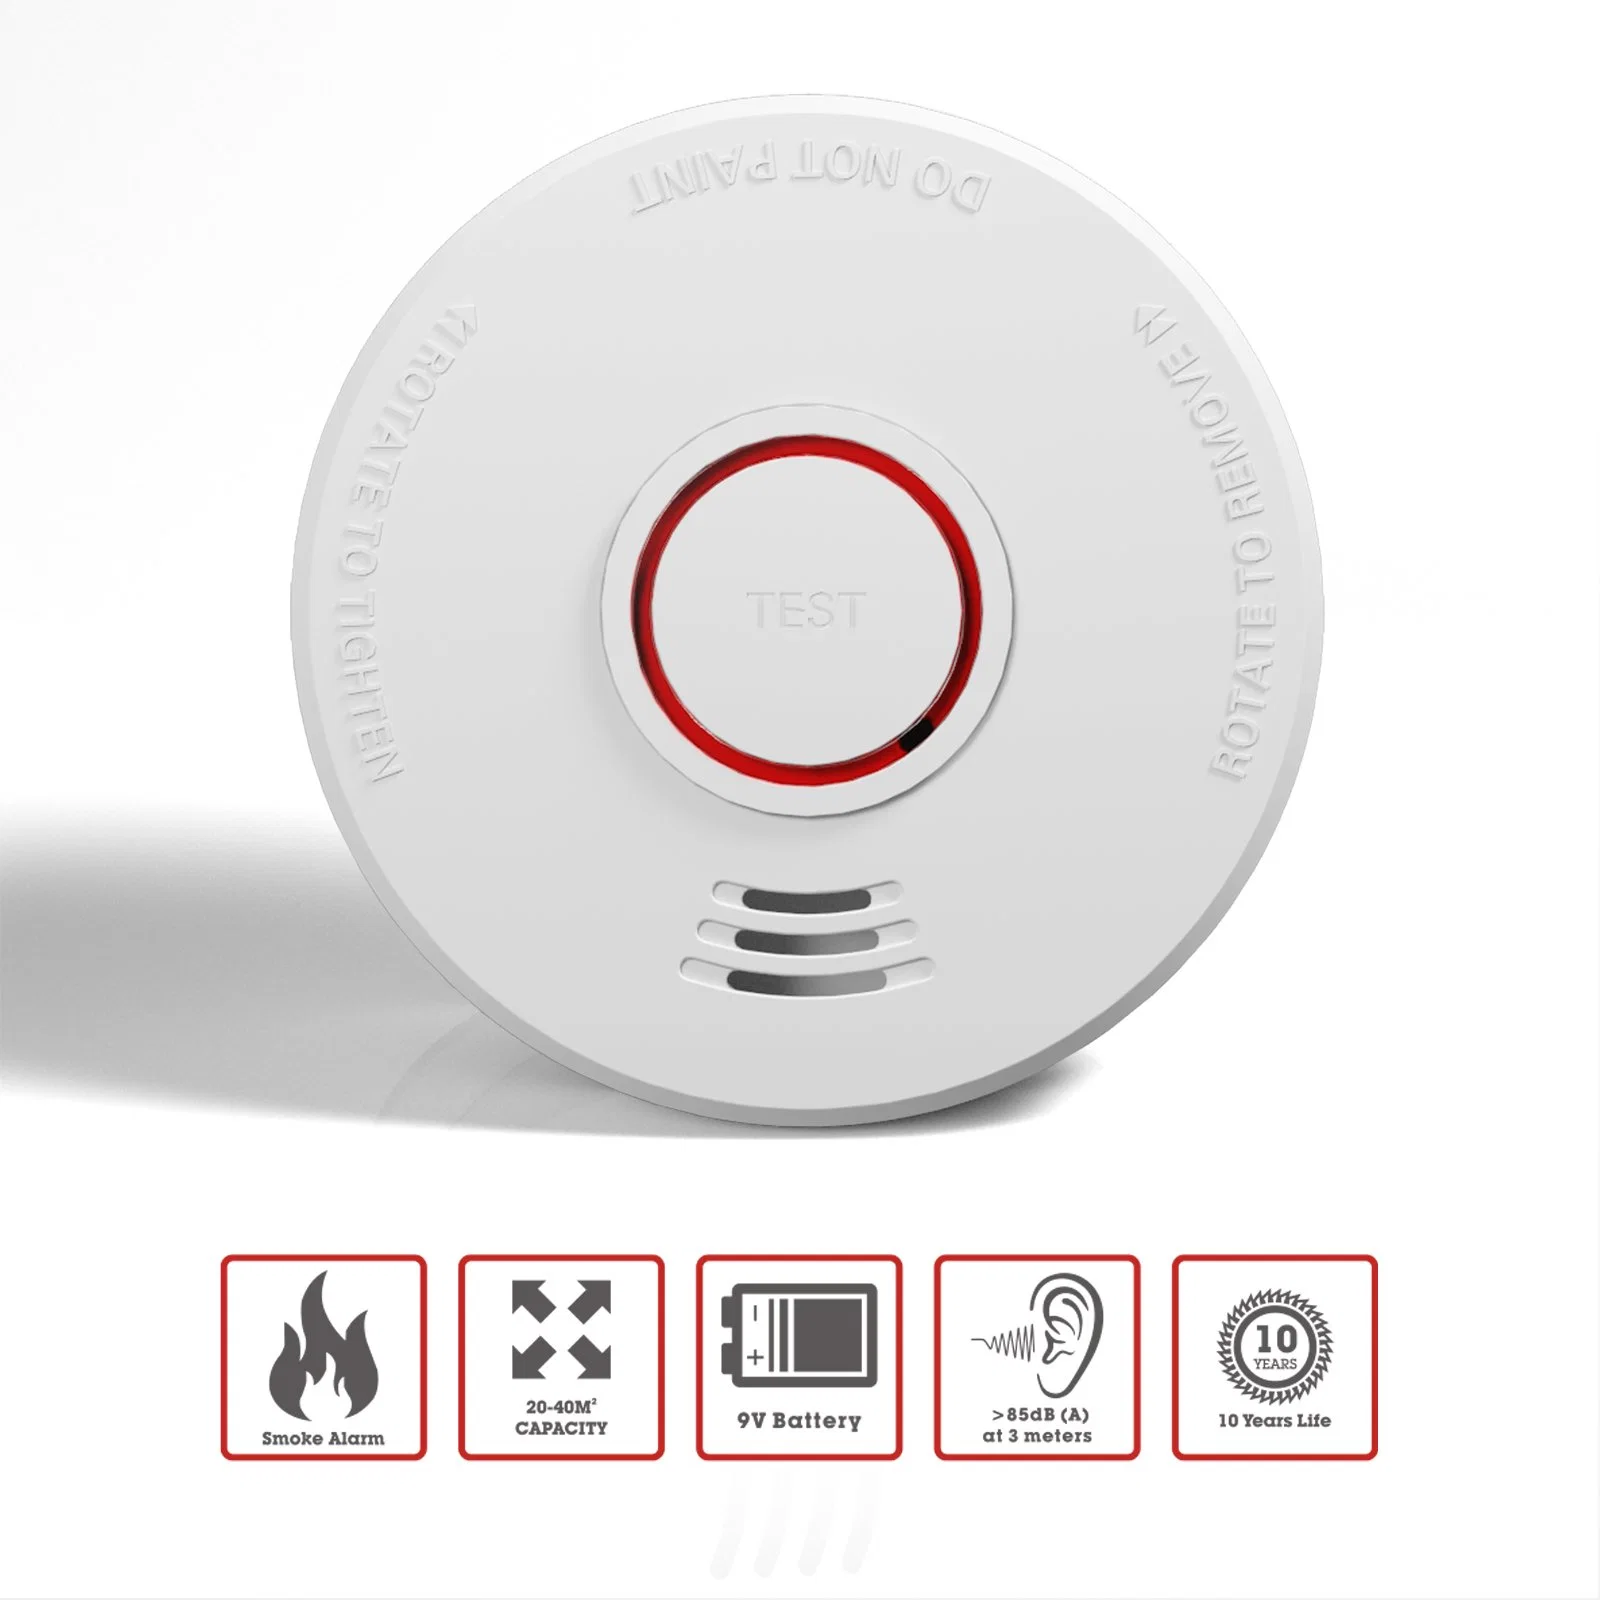 BSI CE UKCA EN14604 alarma de humo Venta en caliente Detector de humo Alarma de incendio con batería reemplazable